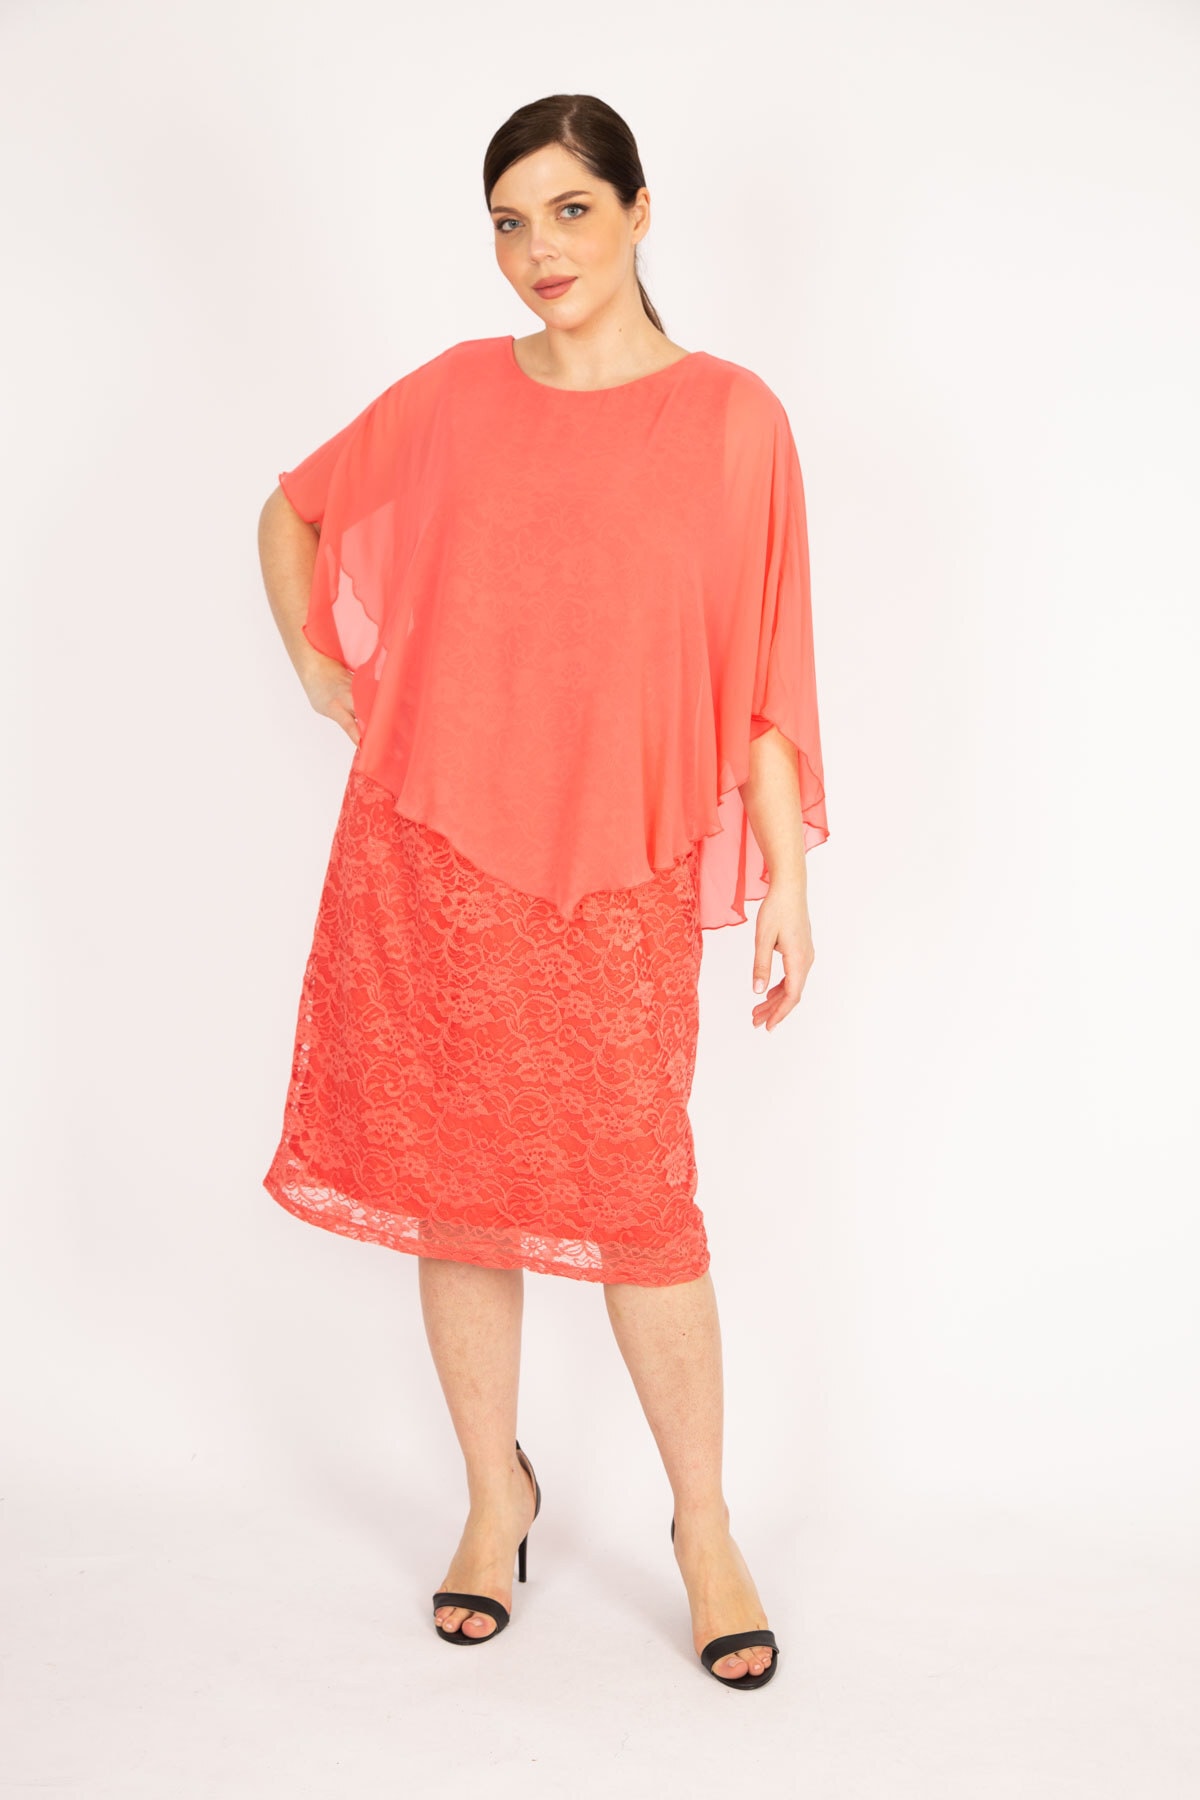 Şans Women's Pomegranate Plus Size Chiffon Cape Lined Lace Dress